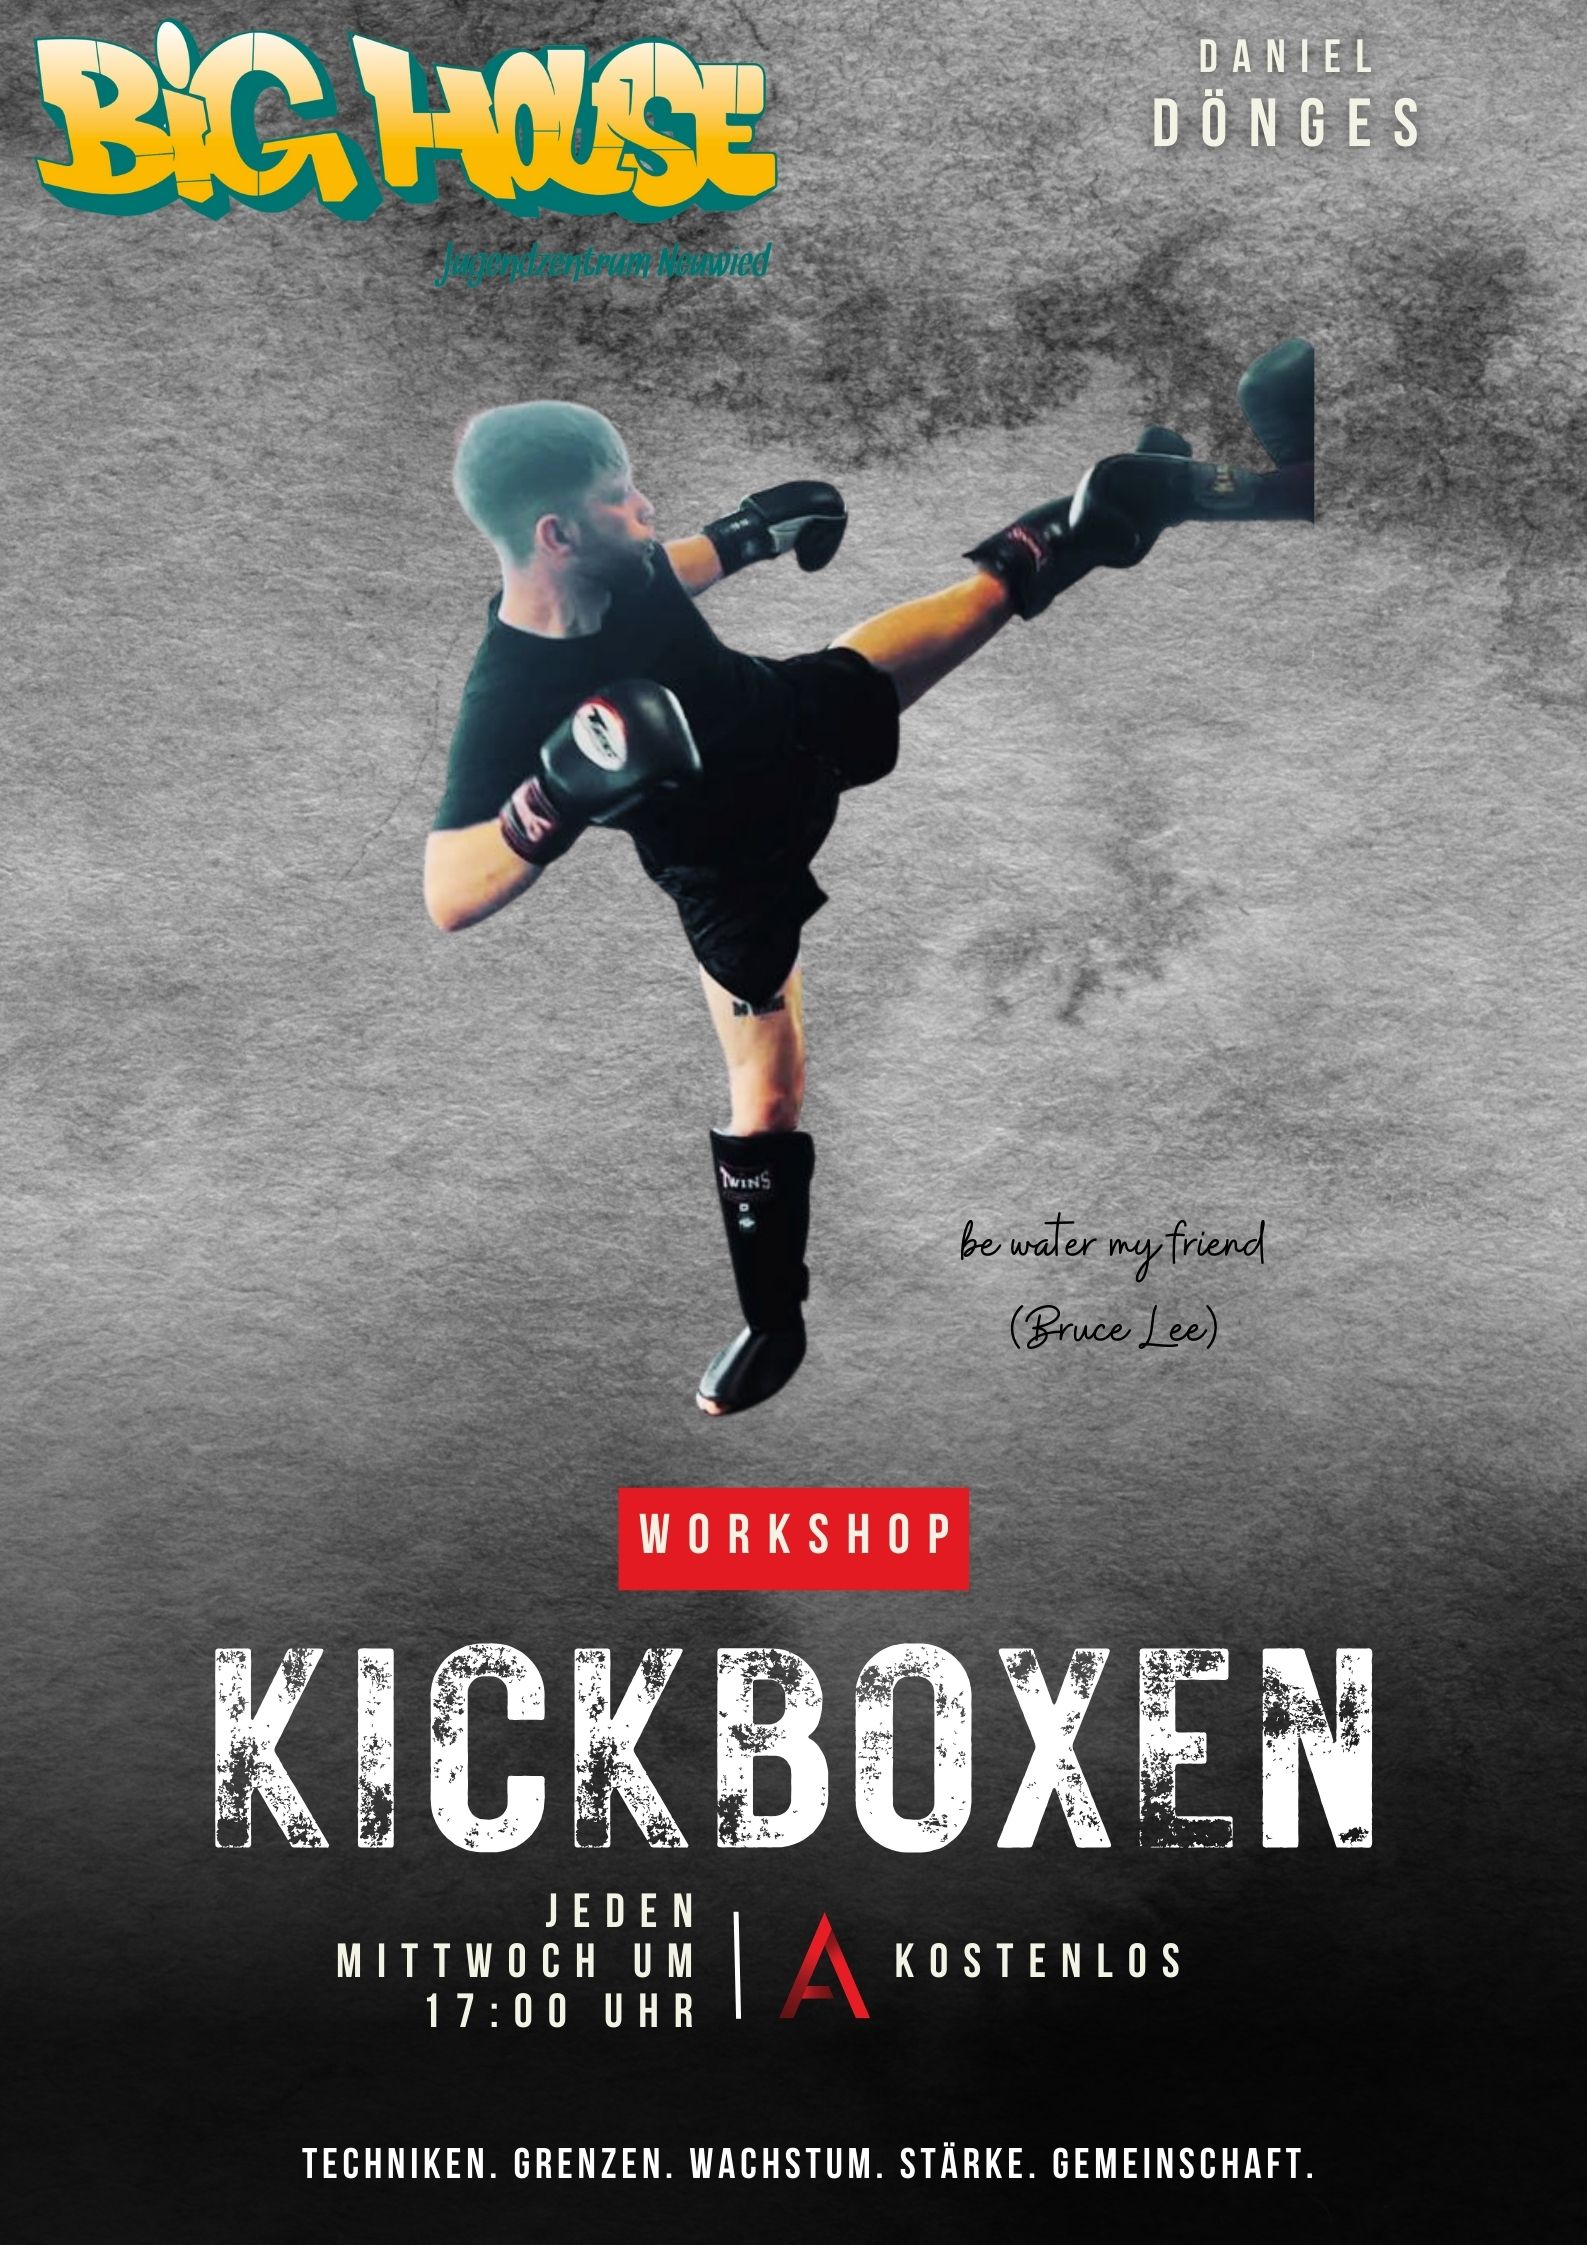 Kickboxen im Big House mit Daniel Dönges, jeden Mittwoch um 17 Uhr. Erlerne Techniken, wachse, setze deine Grenzen und stärke dich und deine Gemeinschaft. 